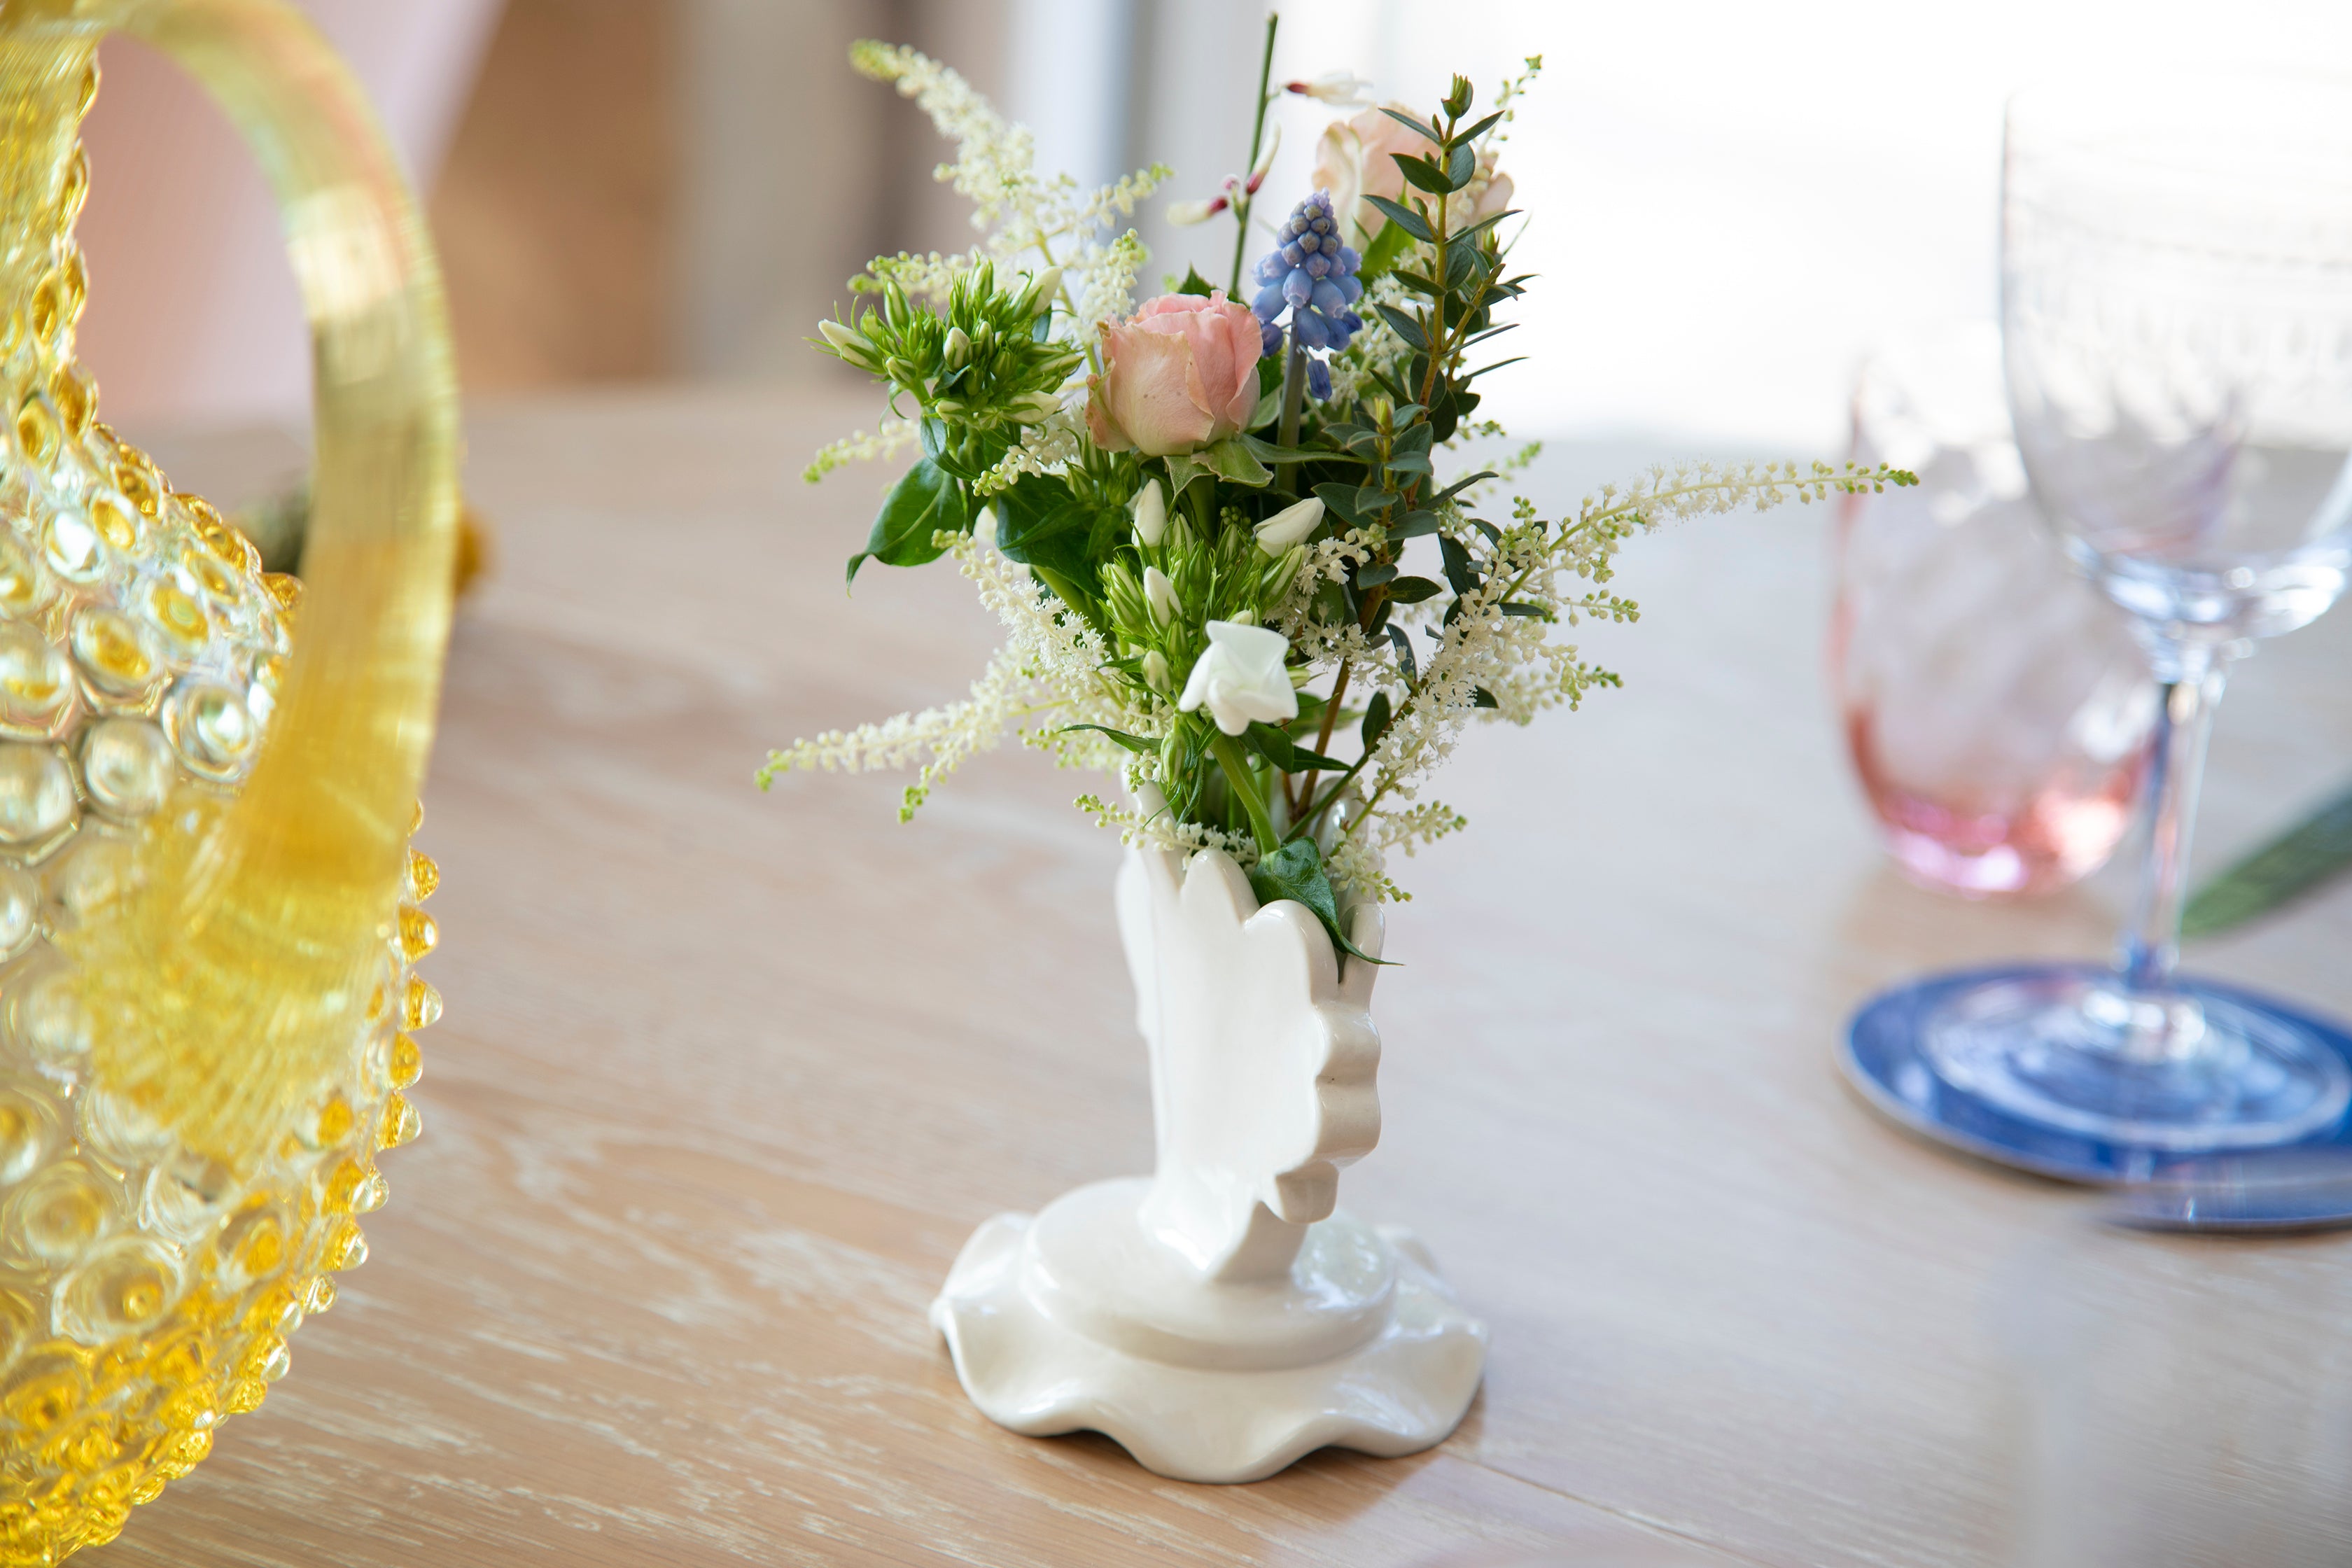 Scalloped posy vase | white gloss | osski